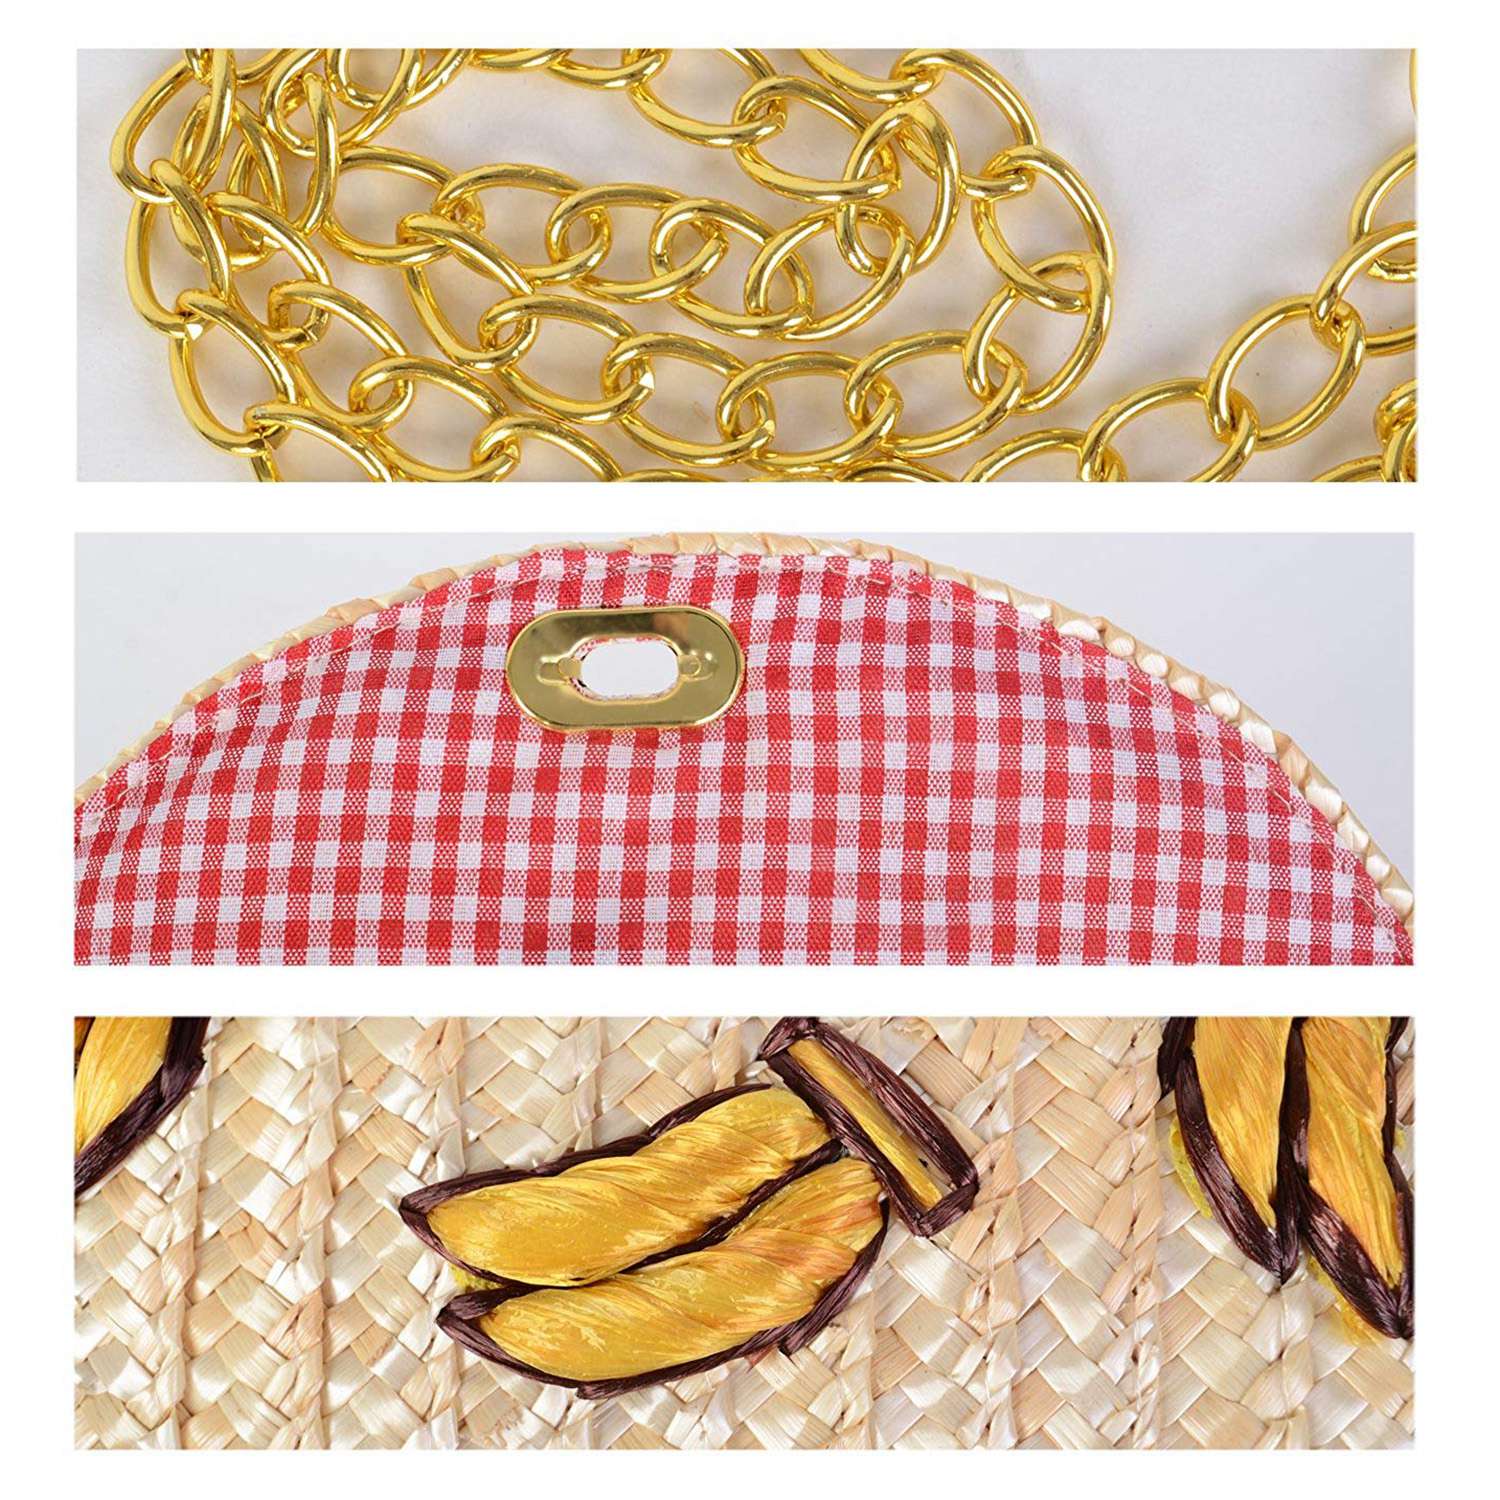 Straw Crossbody Crochet Shoulder Bag Tassel Fringe Fashion Raffia Clutch Banana - ebowsos